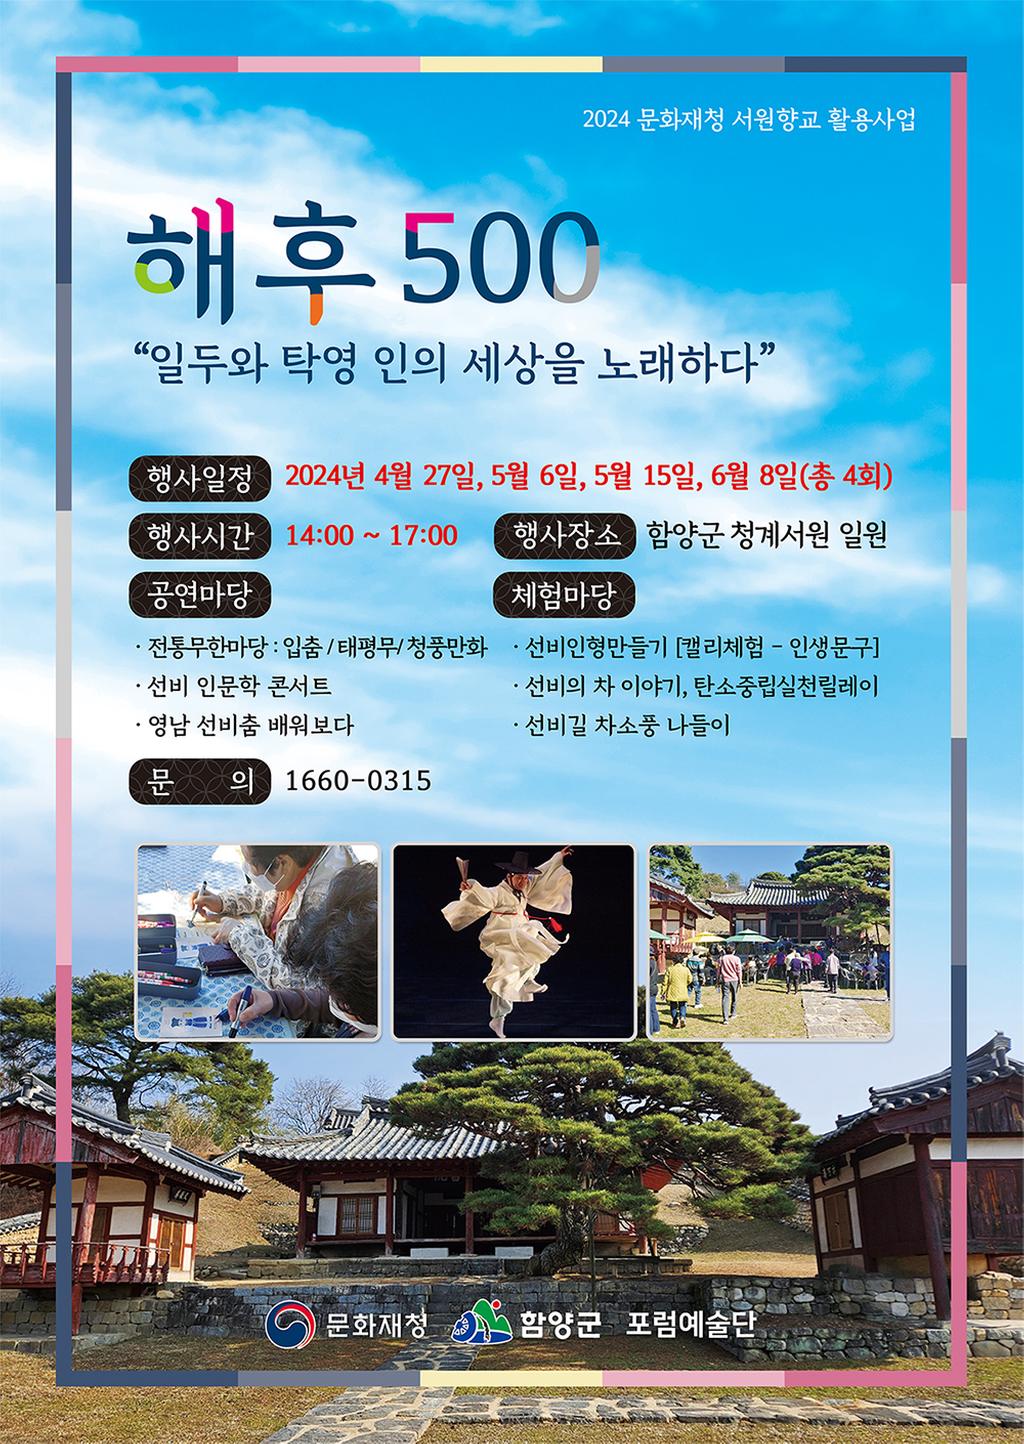 2024 서원 향교 활용사업 참가자 모집